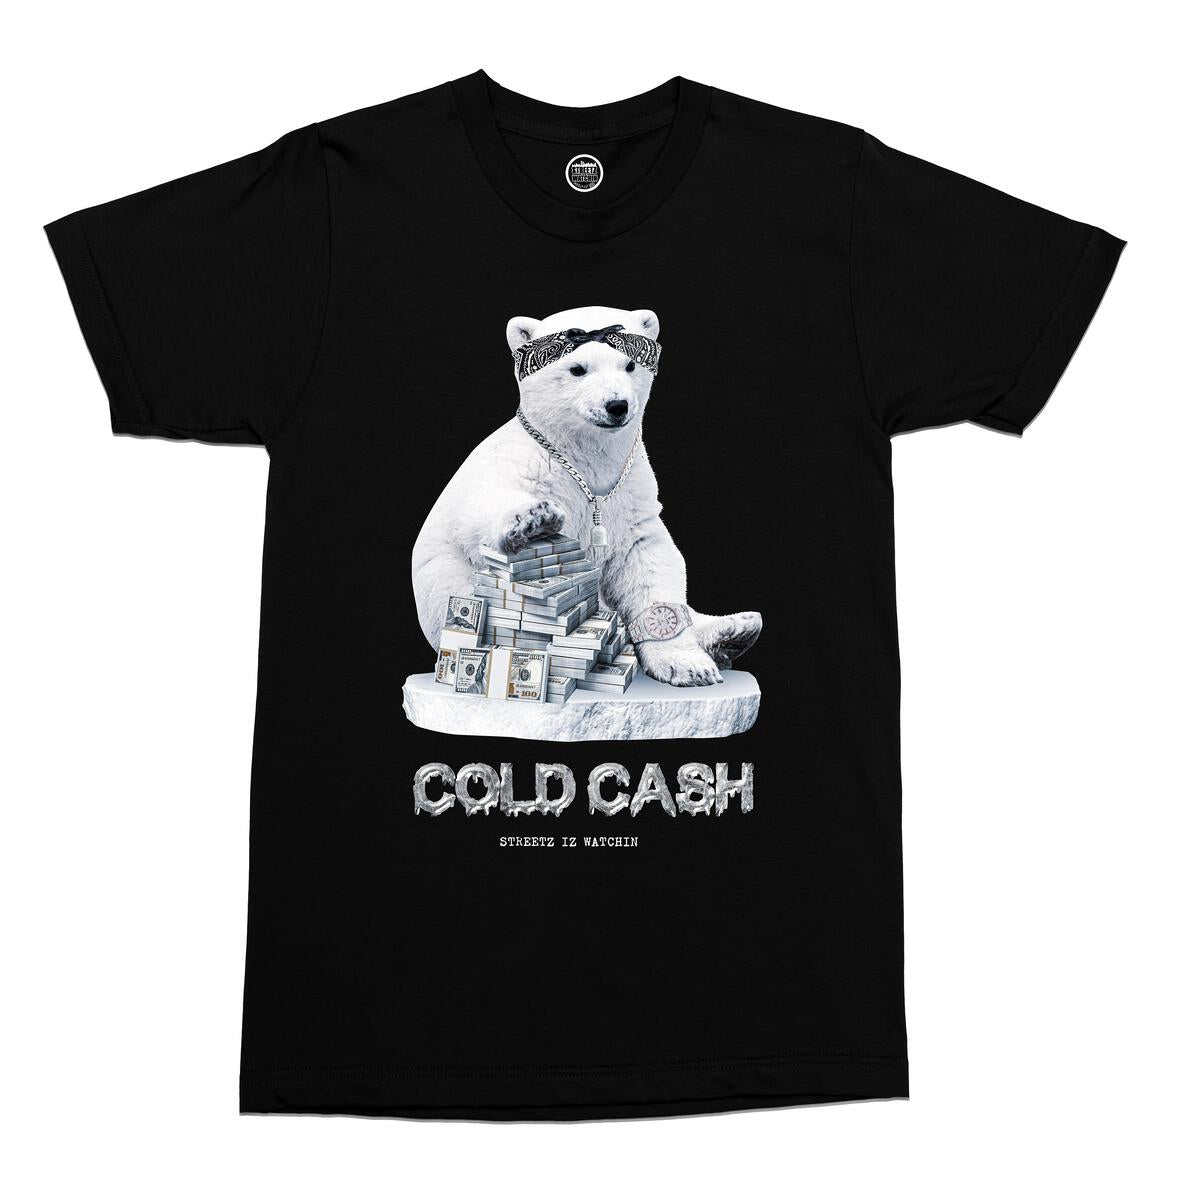 "Cold Cash" T-Shirt - Black